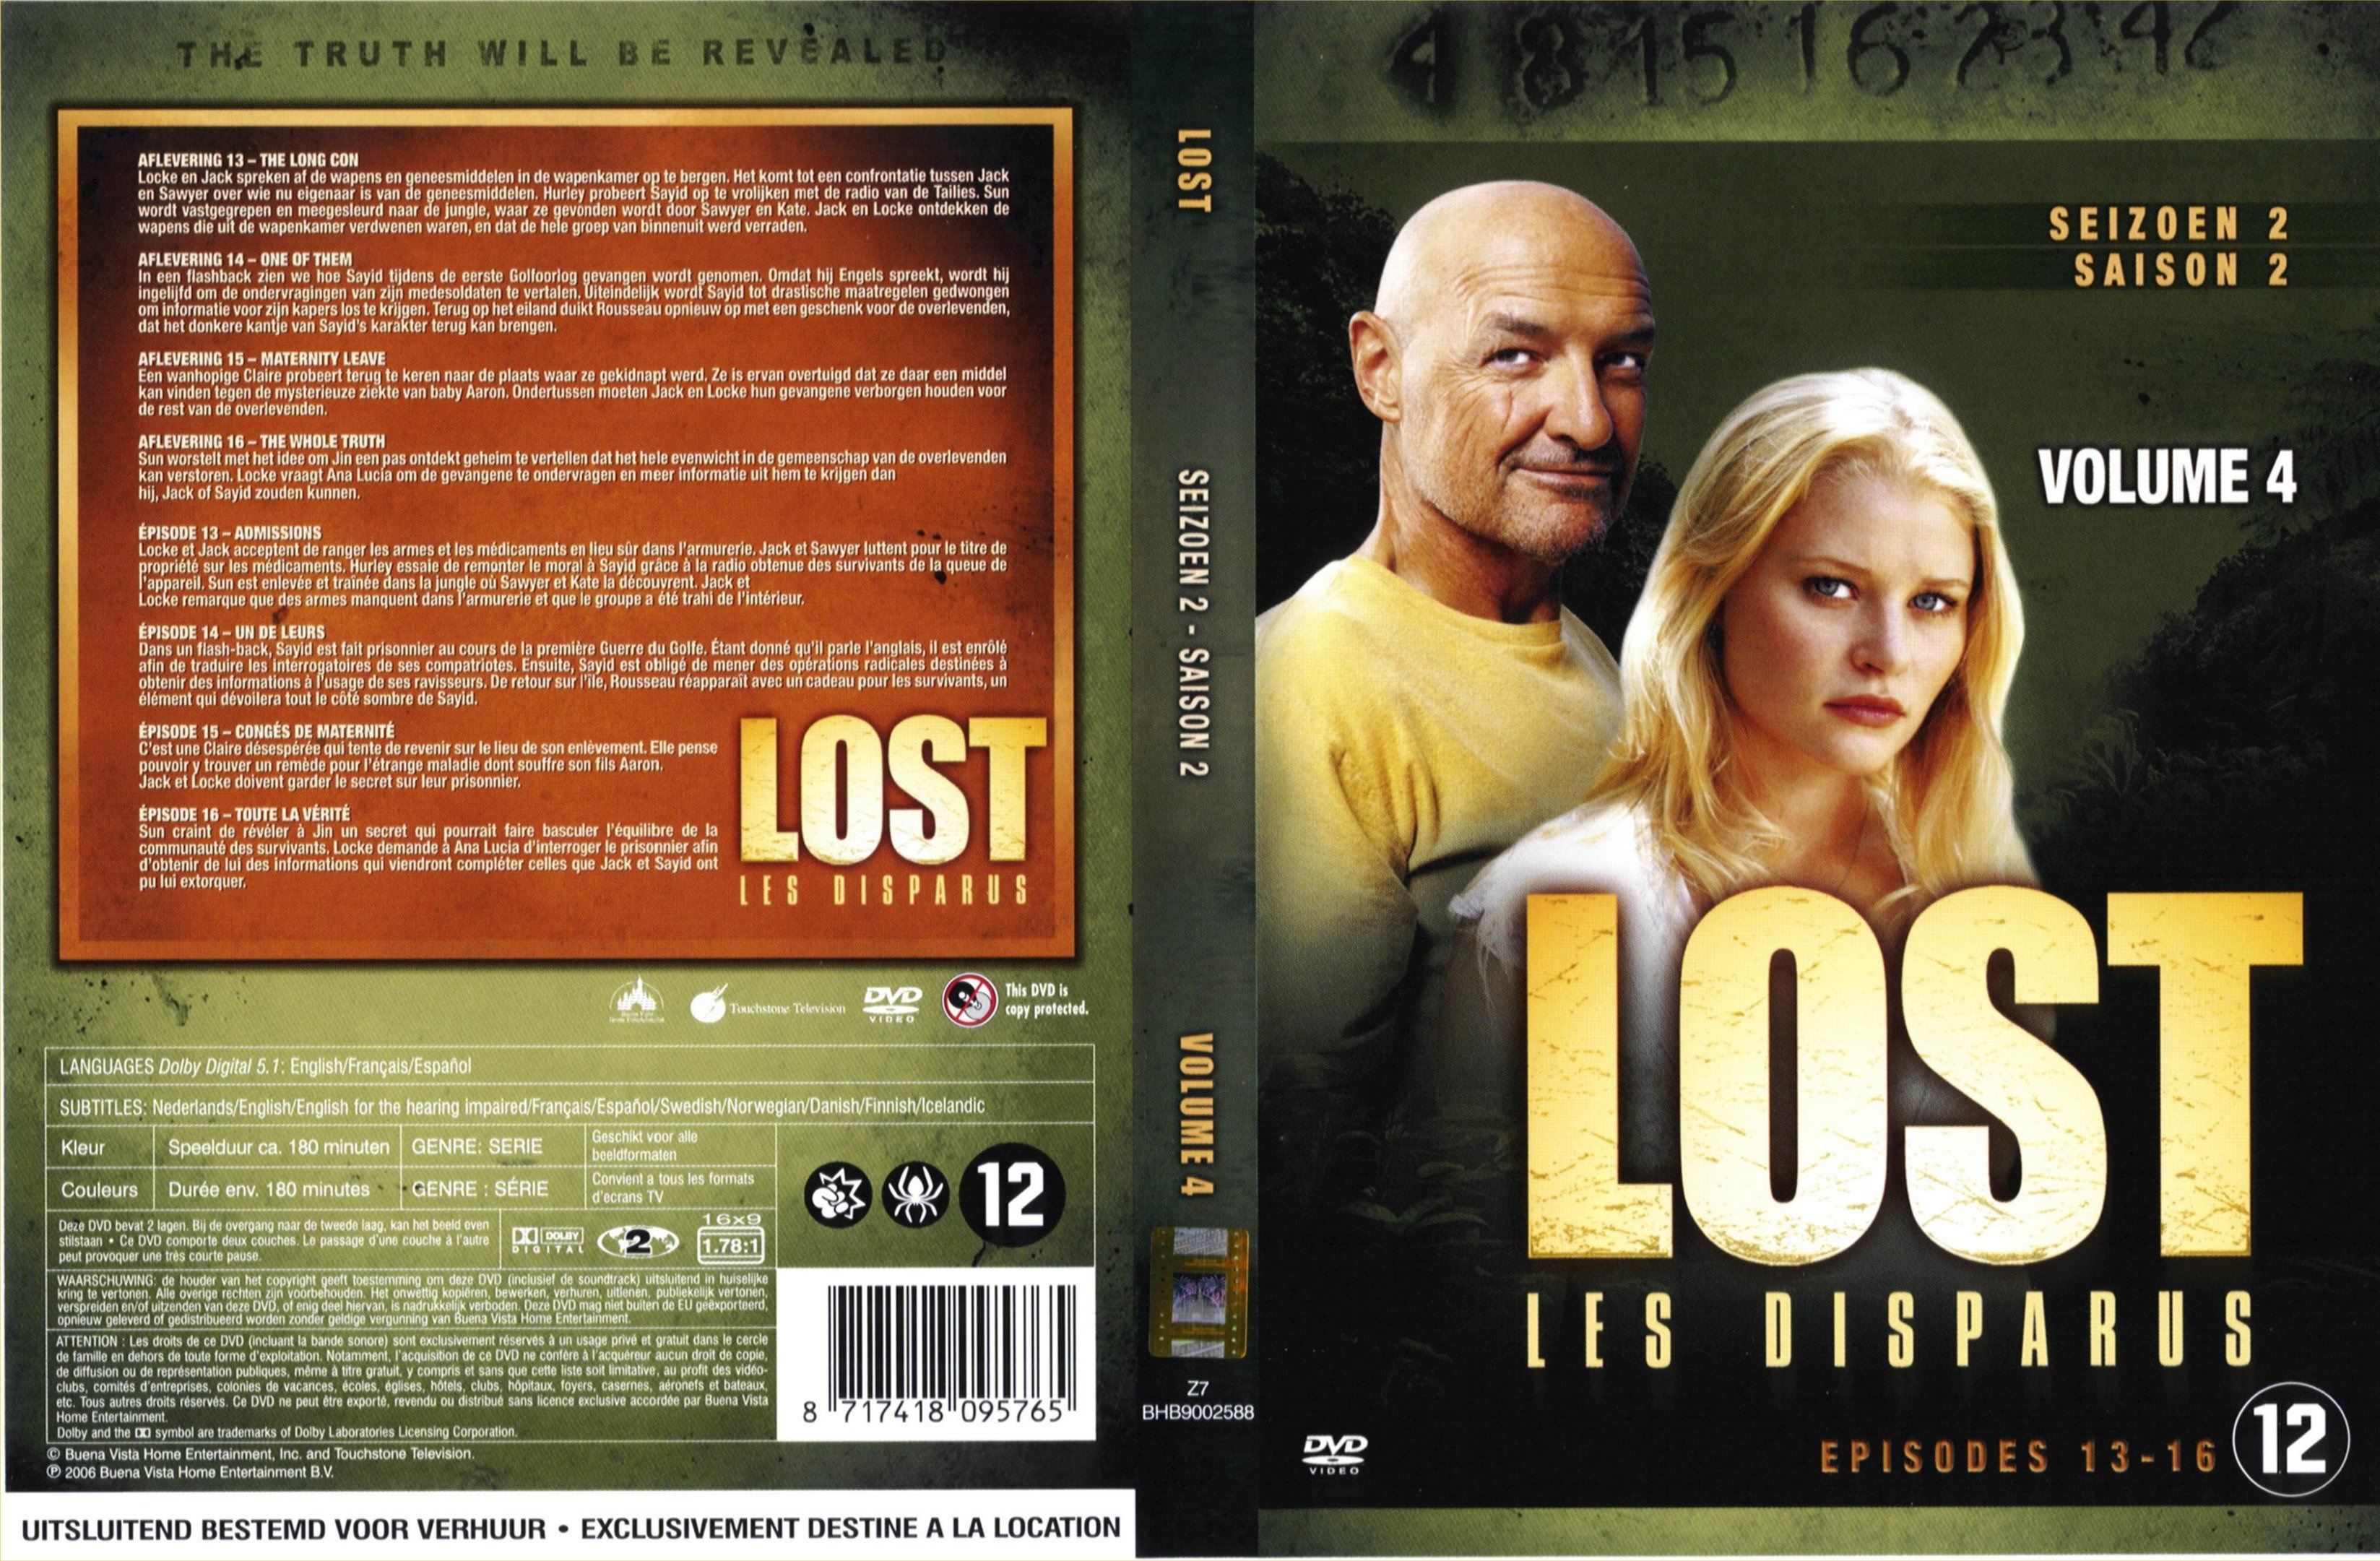 Jaquette DVD Lost Saison 2 DVD 4 v2